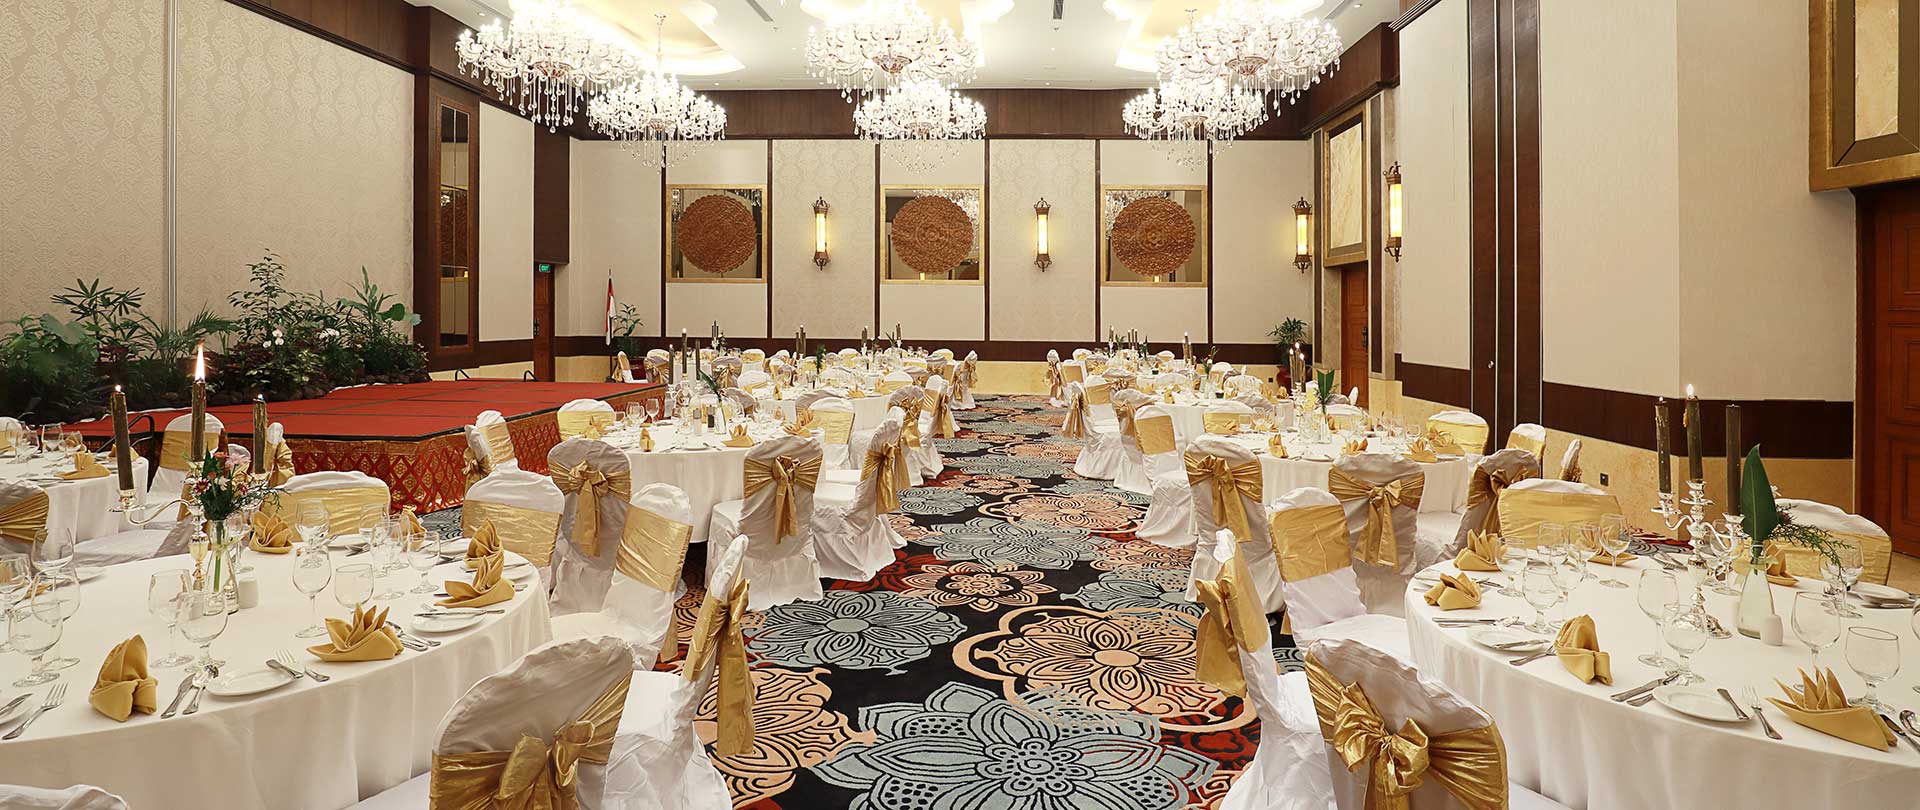 SereS Springs Resort & Spa Meeting Room, Ubud